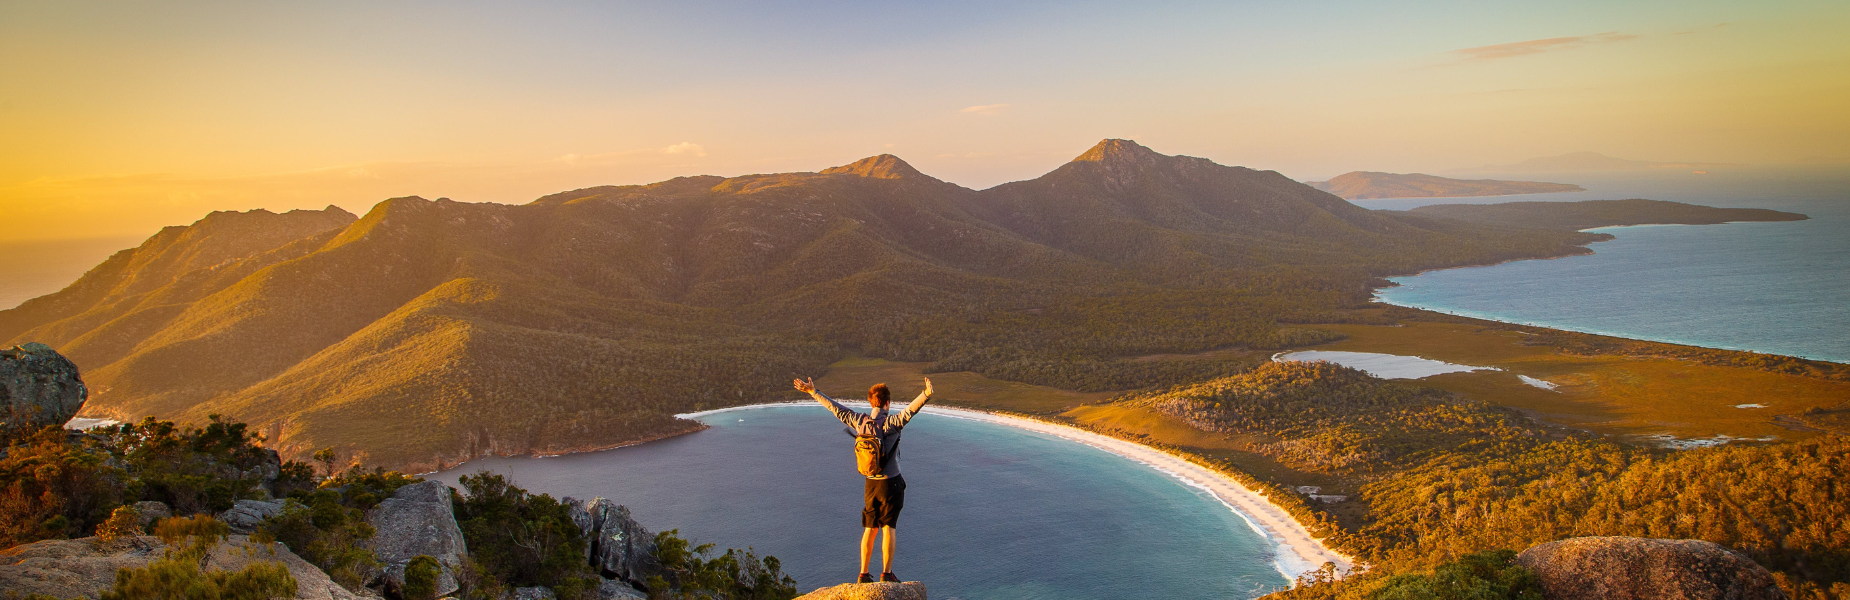 Een jongen met zijn armen in de lucht op een bergtop kijkend naar bergen en de zee